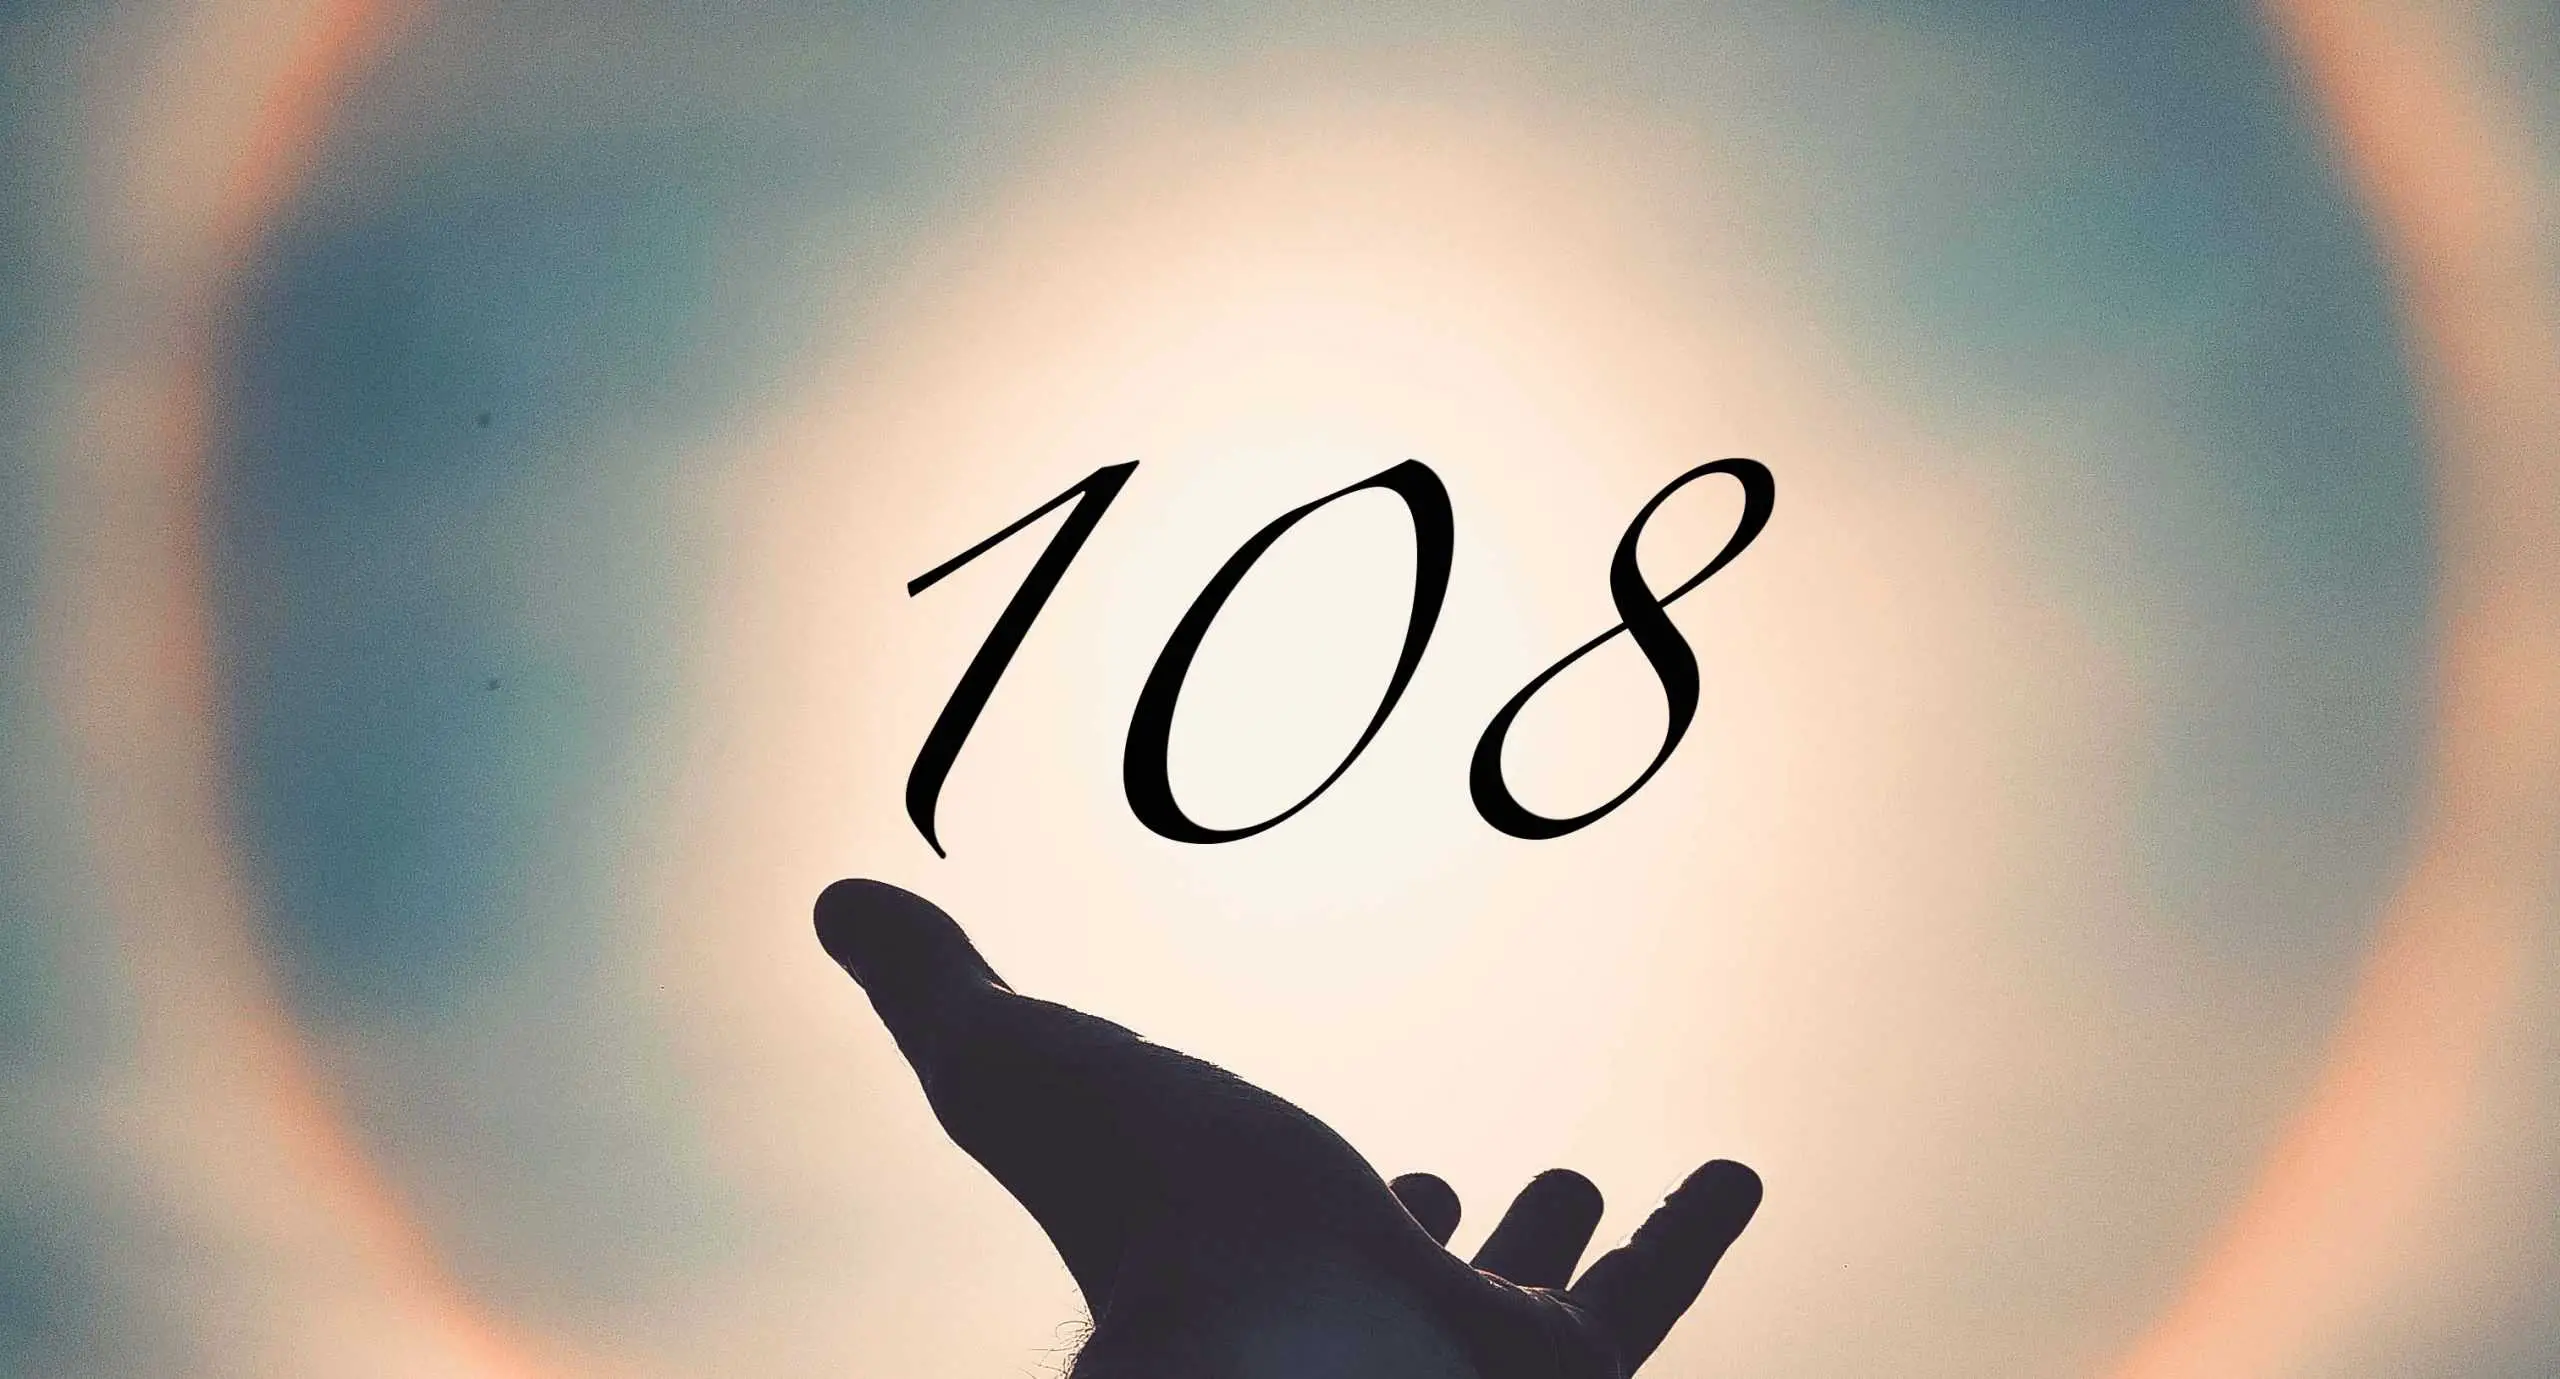 Signification du nombre 108